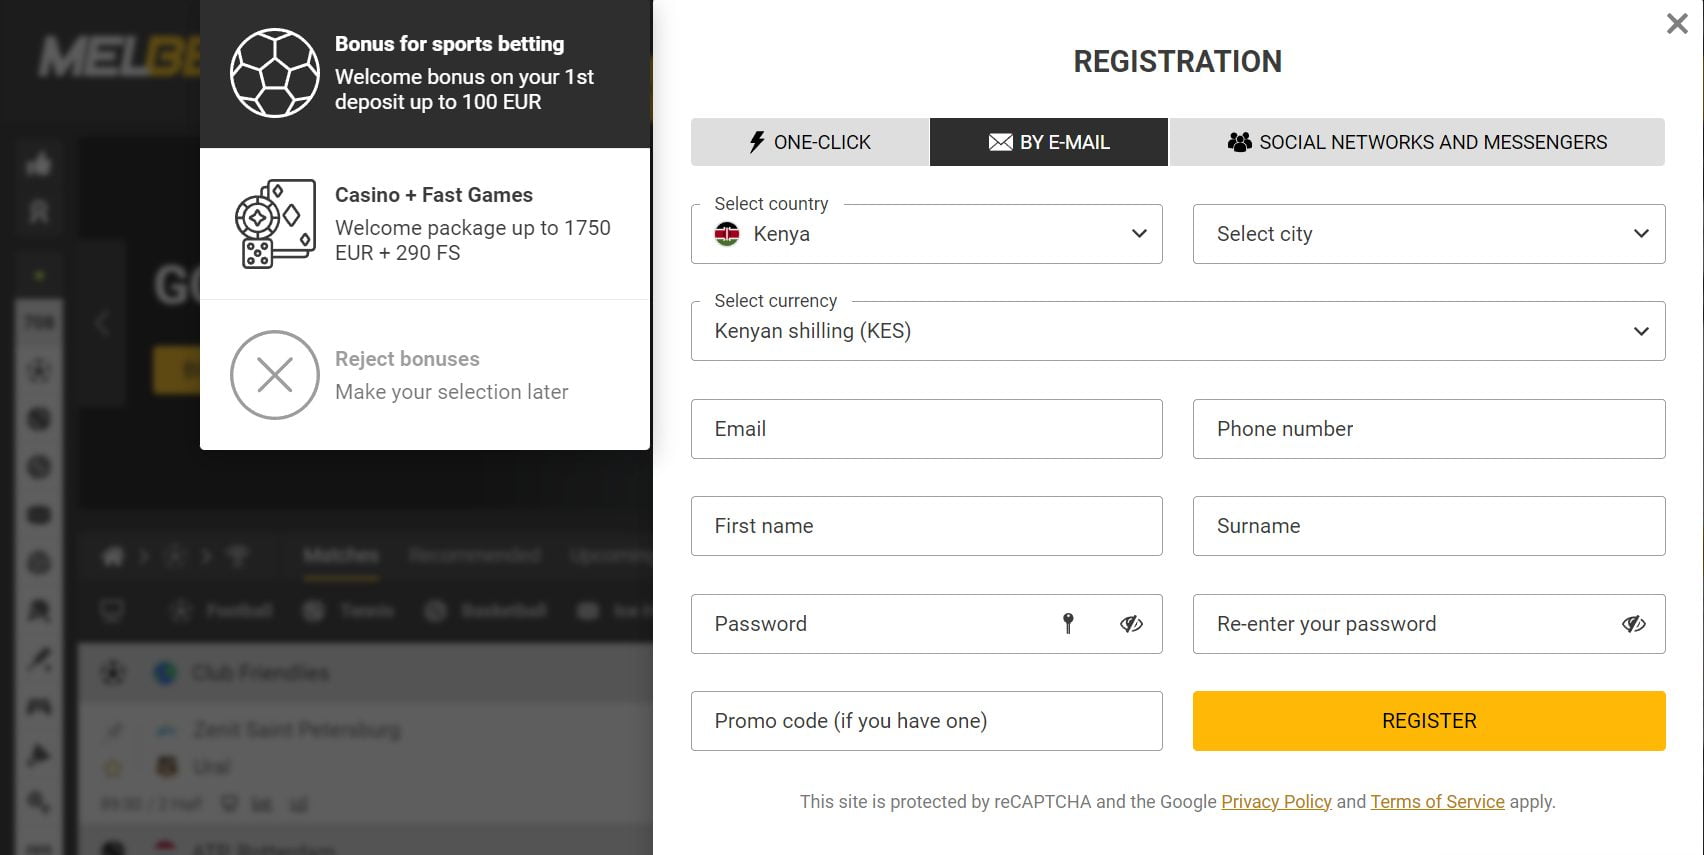 Melbet Kenya registration by email address: Full registration